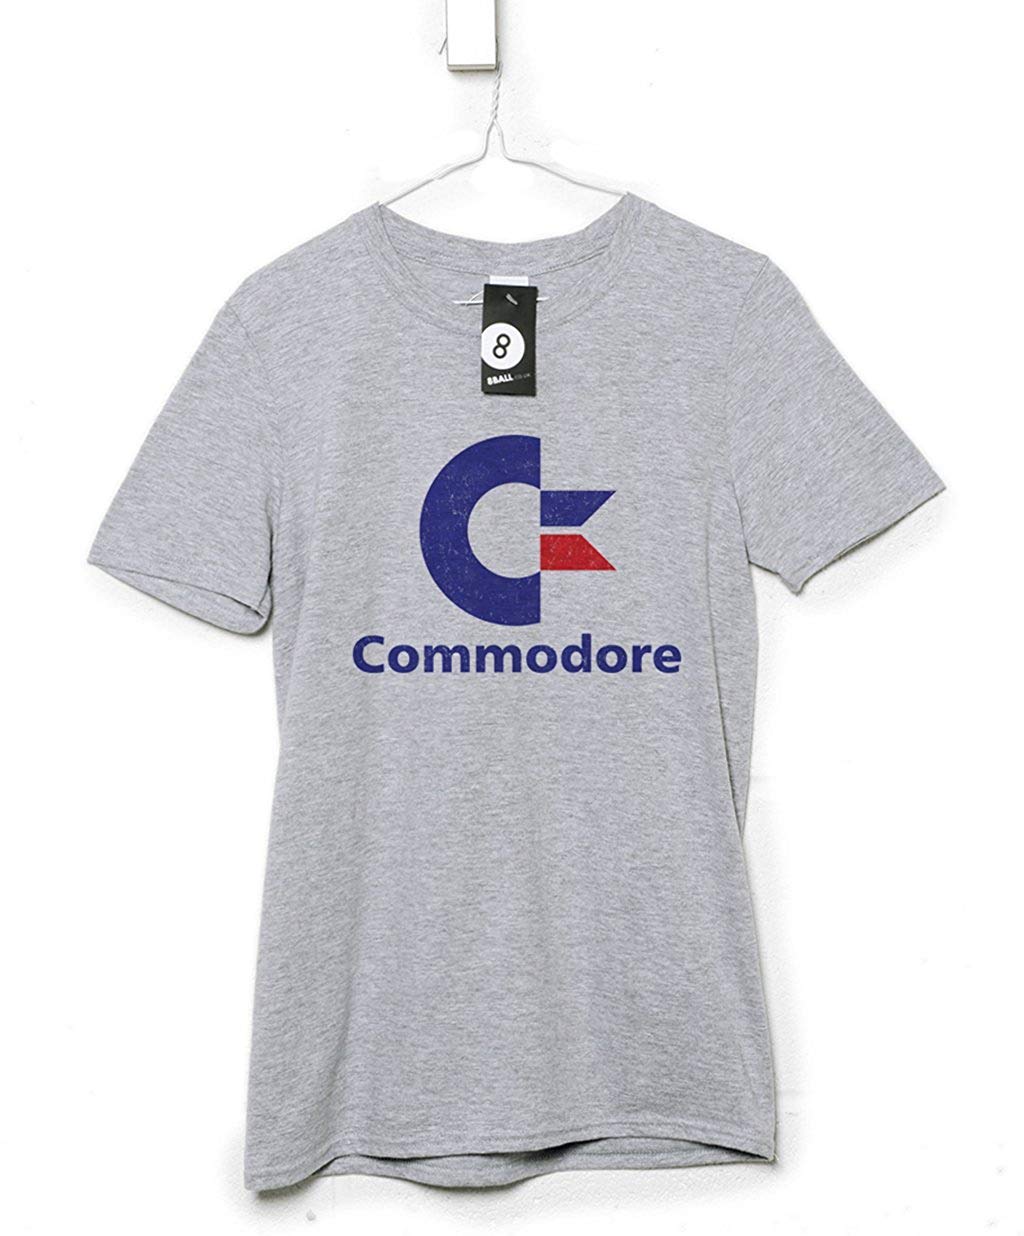 Commodore Logo - Amazon.com: Mens Shirt - Commodore Logo - 8Ball Originals Tees: Clothing